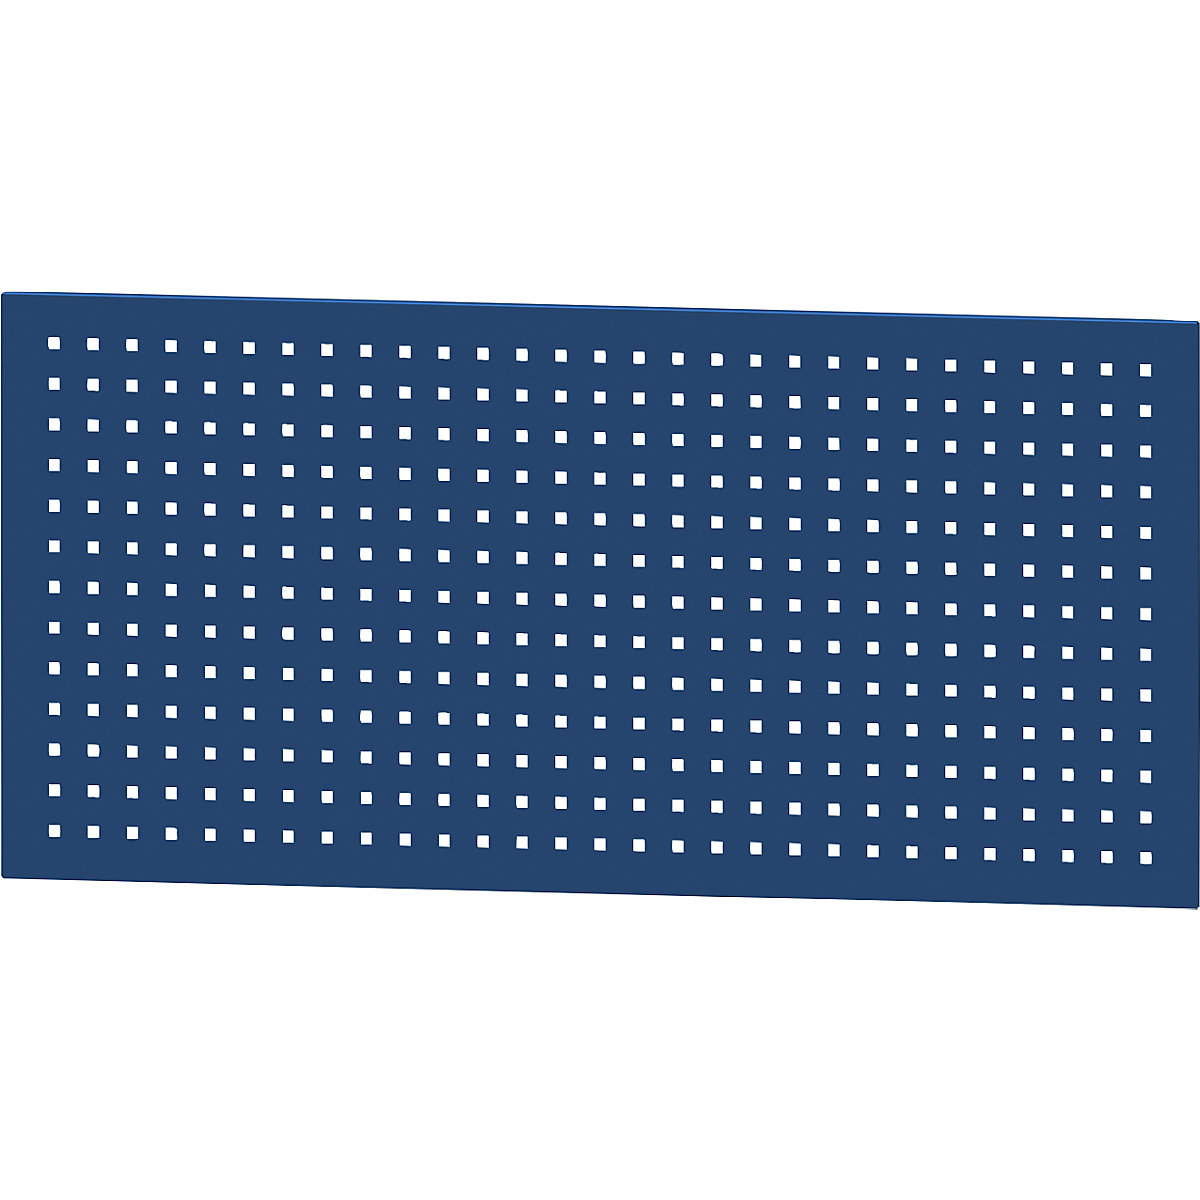 Rupičasta ploča – ANKE, širina 600 mm, dužina 1250 mm, u plavoj boji-5